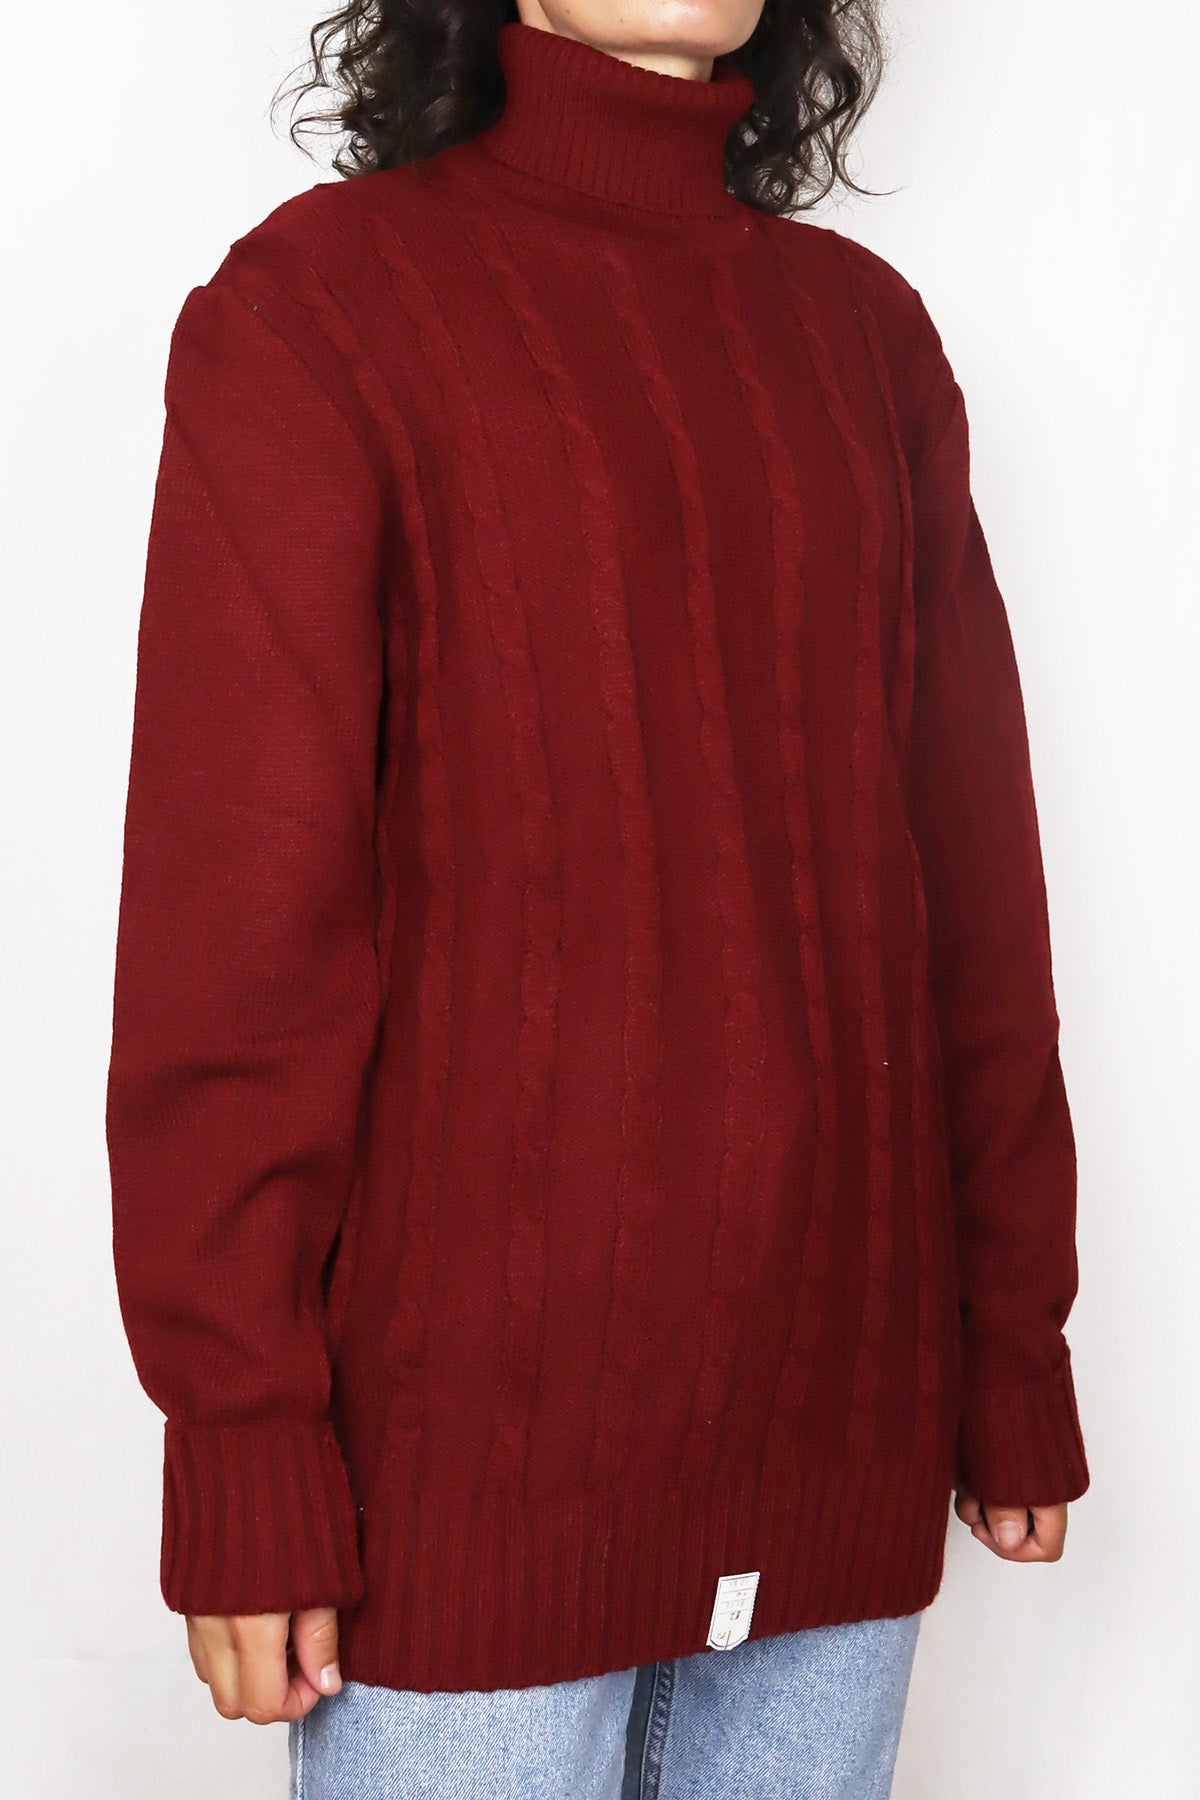 Vintage Pullover Basic Rollkragen Rot ( Gr. M )